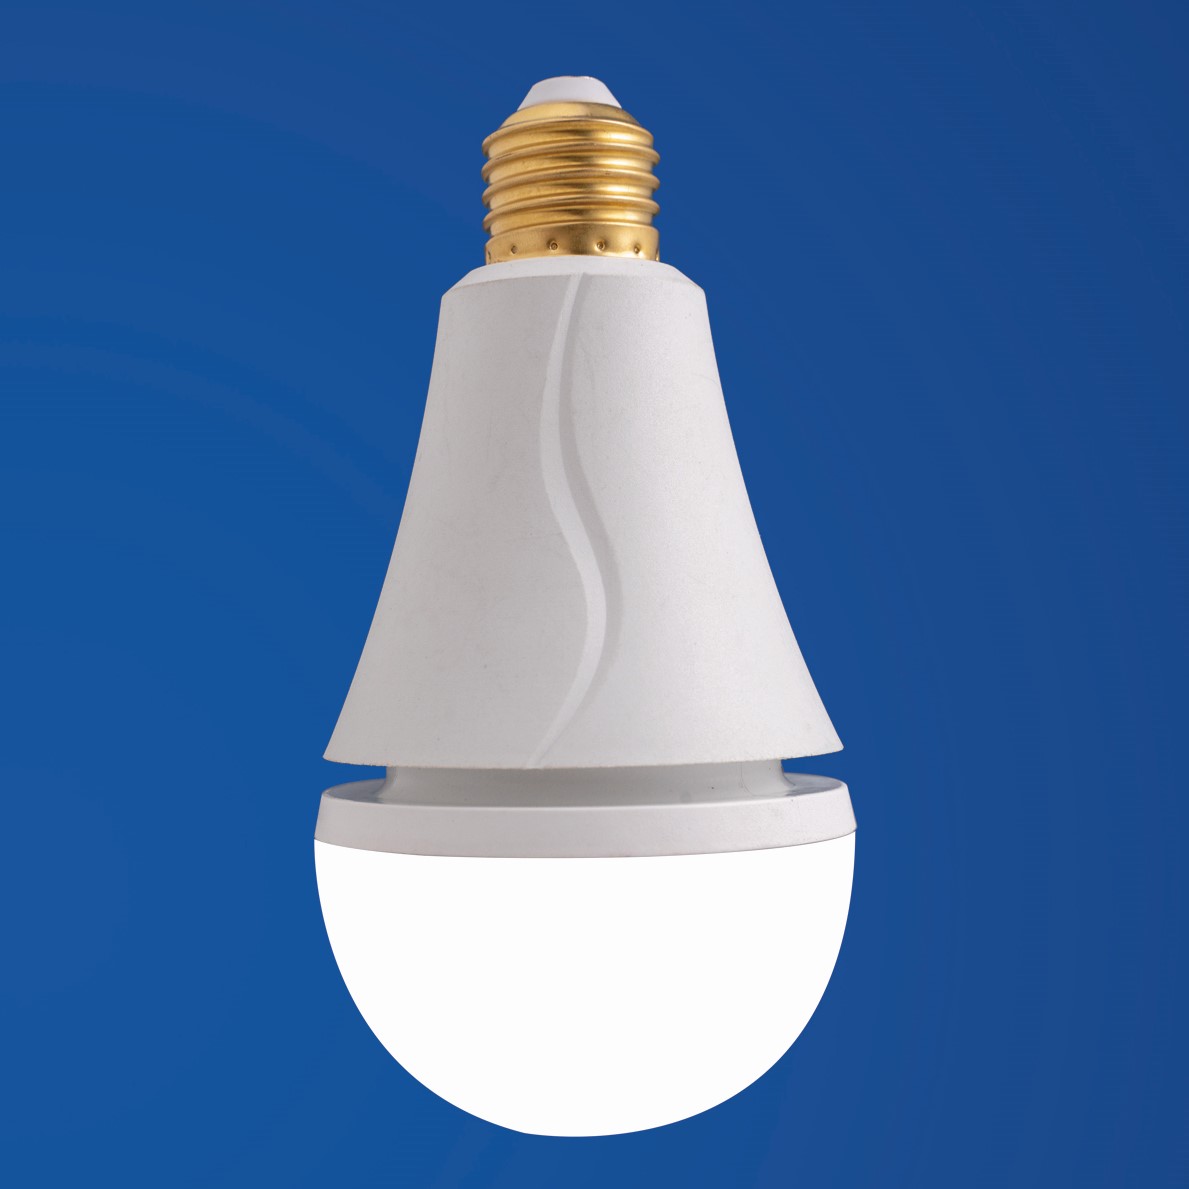 Professional emergency led bulb